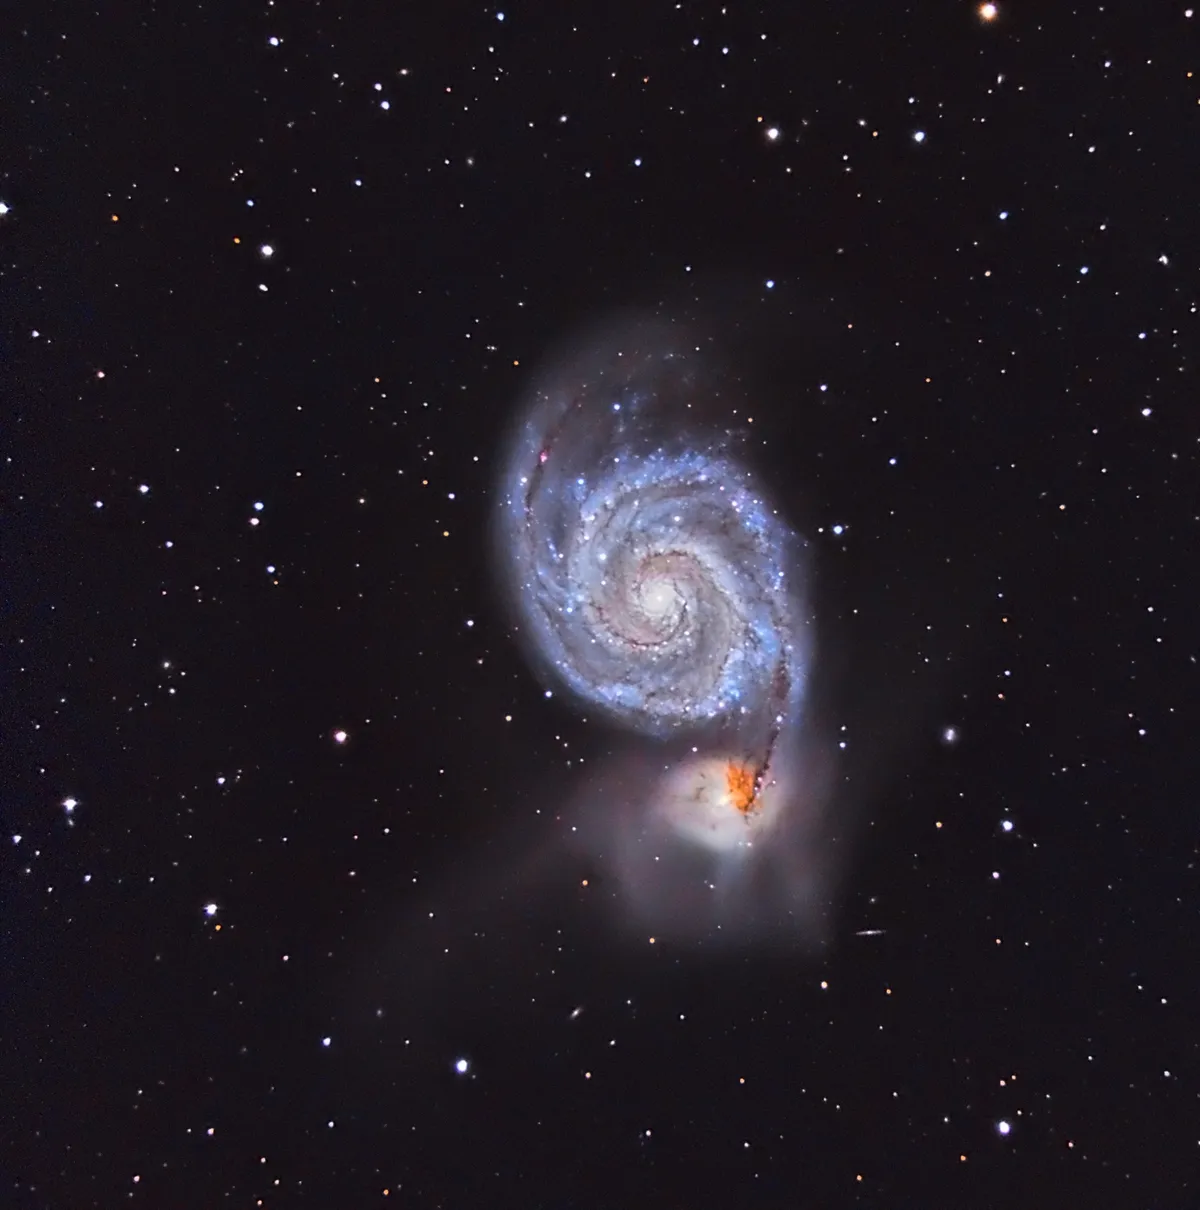 M51 - Whirlpool Galaxy by David Attie, Abu Dhabi, UAE.